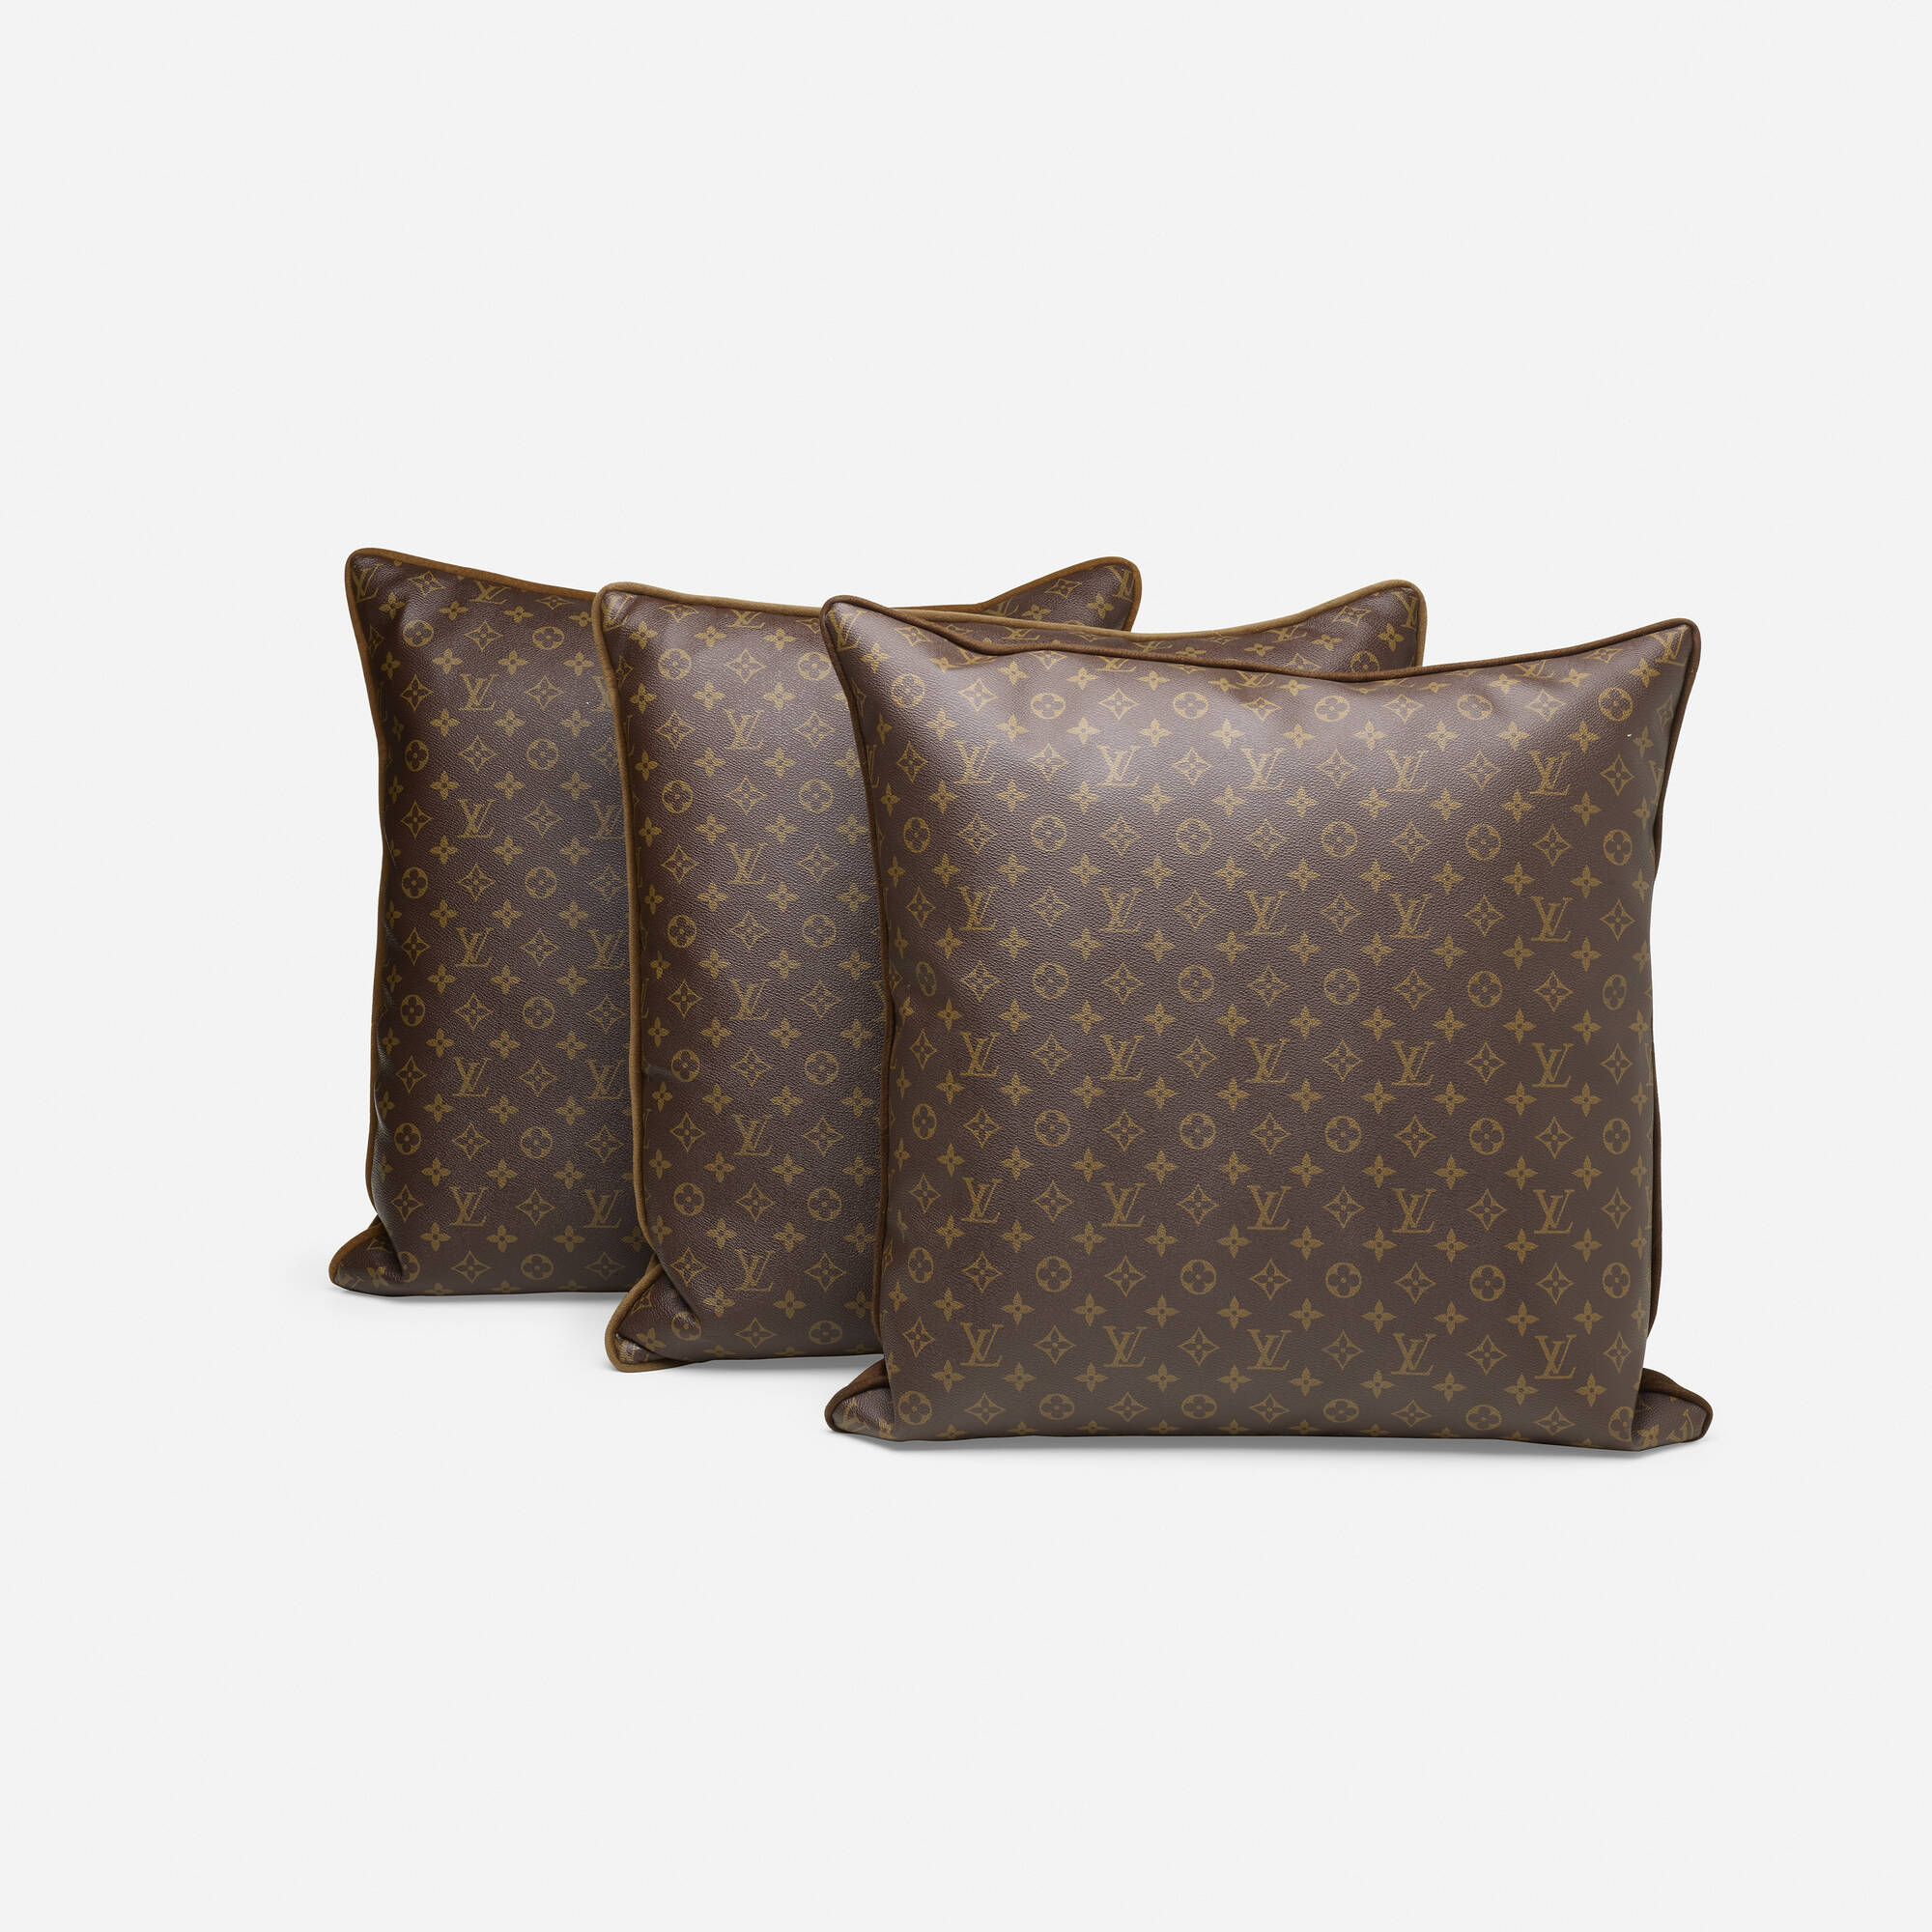 443: LOUIS VUITTON, pillows, set of three